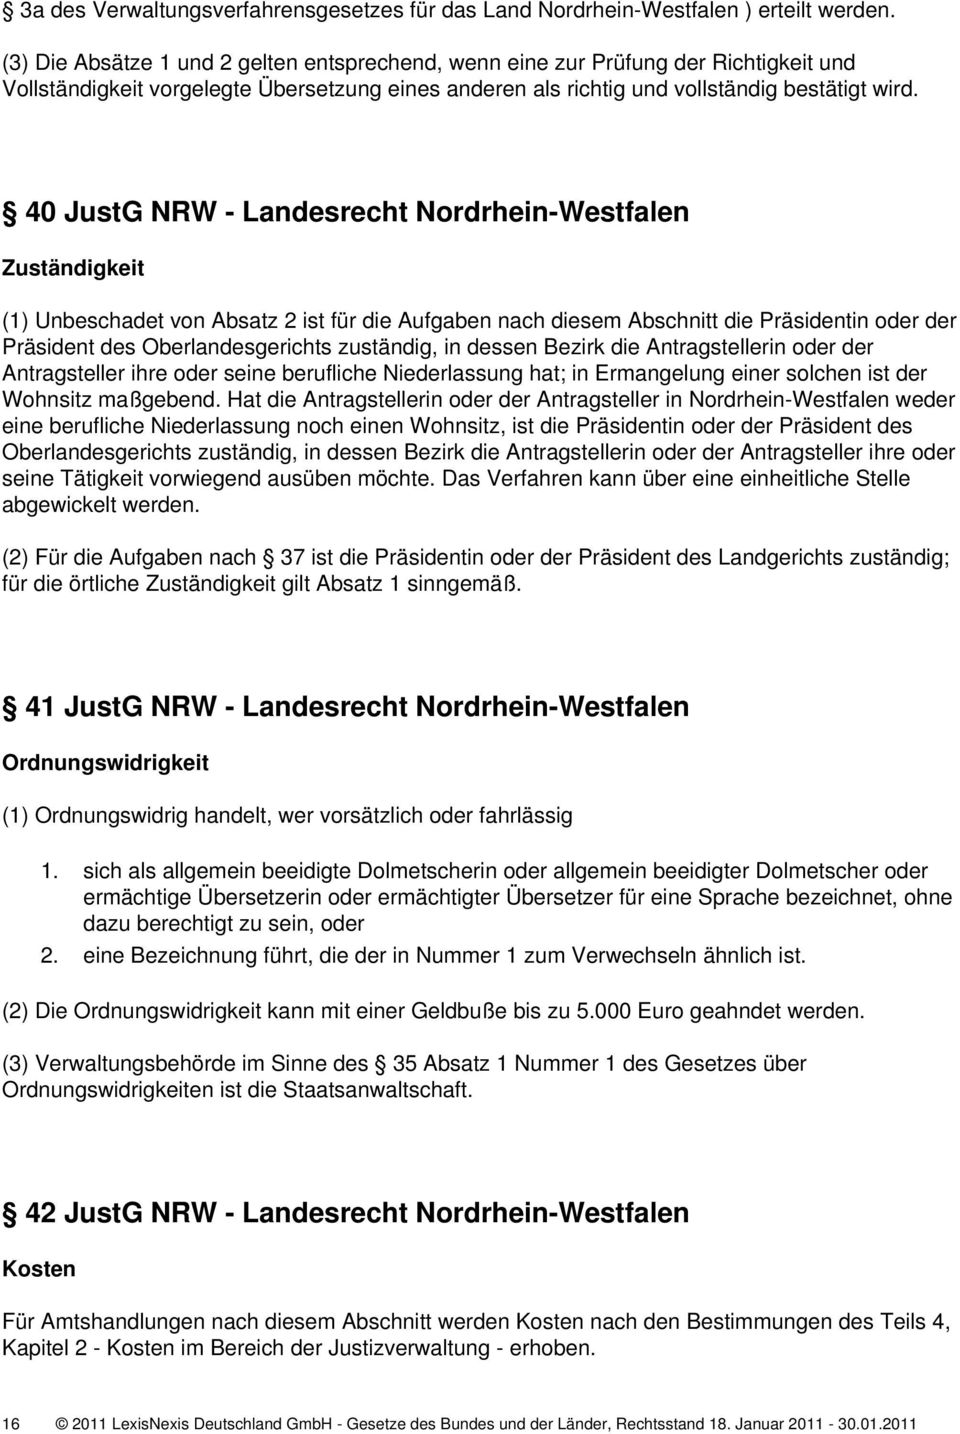 40 JustG NRW - Landesrecht Nordrhein-Westfalen Zuständigkeit (1) Unbeschadet von Absatz 2 ist für die Aufgaben nach diesem Abschnitt die Präsidentin oder der Präsident des Oberlandesgerichts